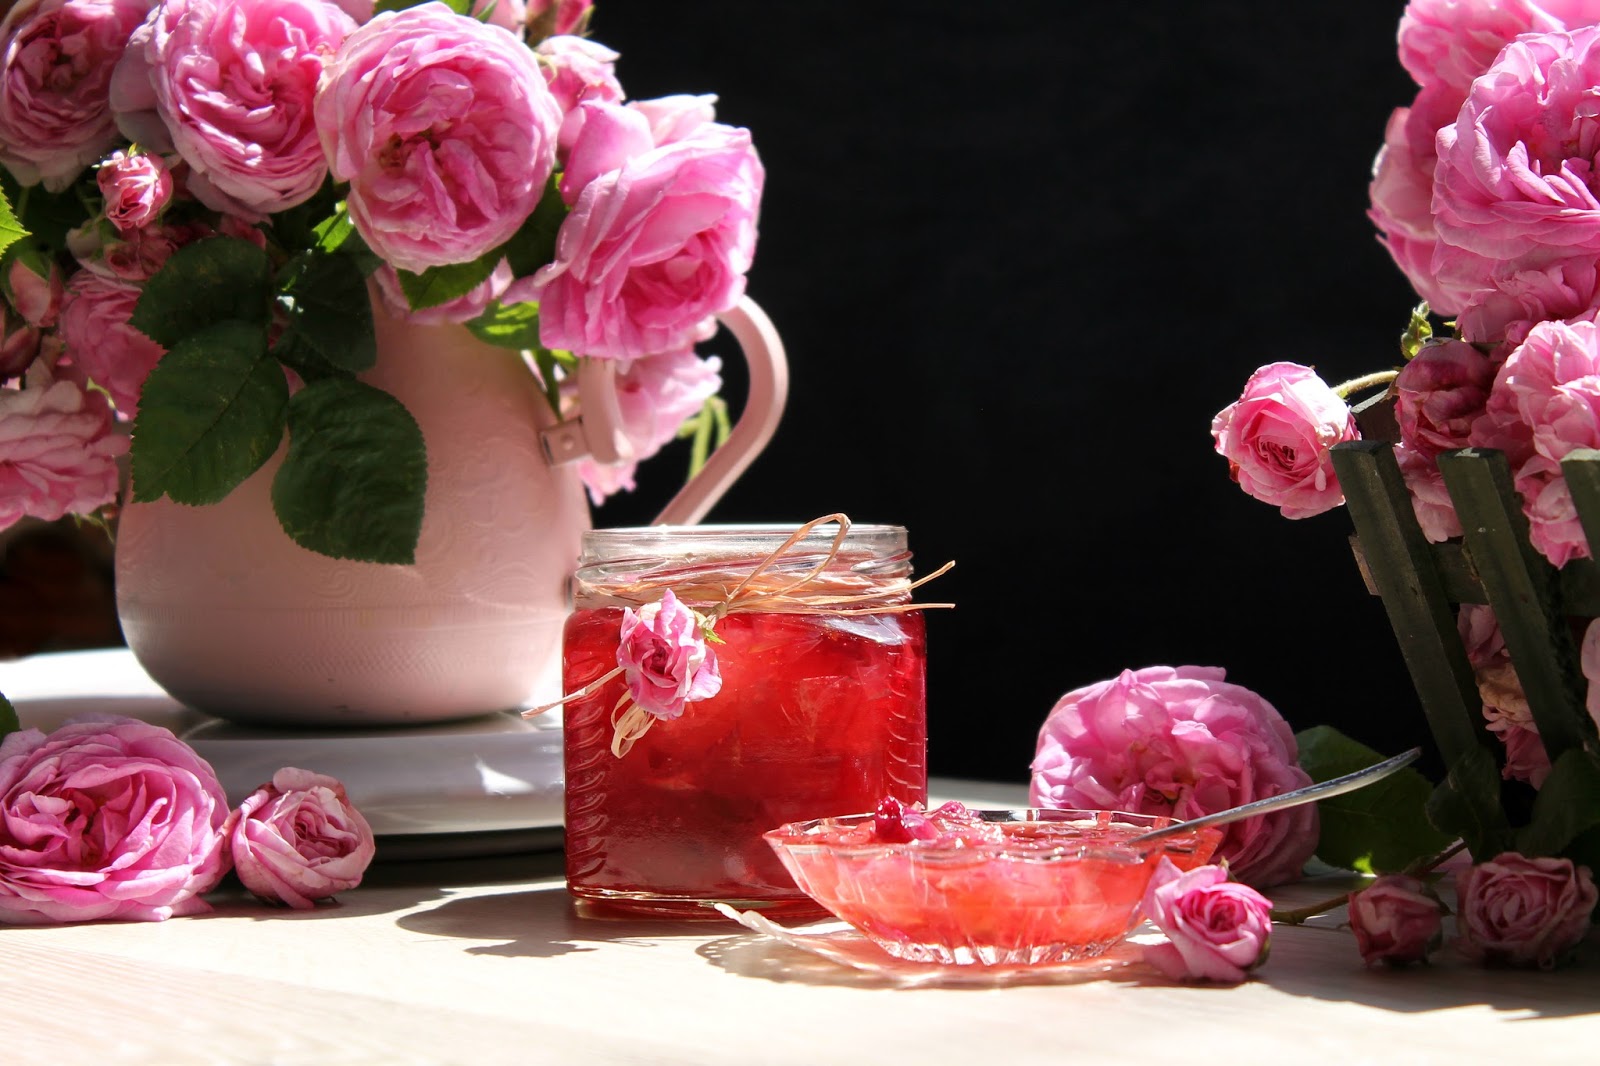 Из лепестков Розы (ботаническое название шиповника) получается ароматное и вкусное варенье